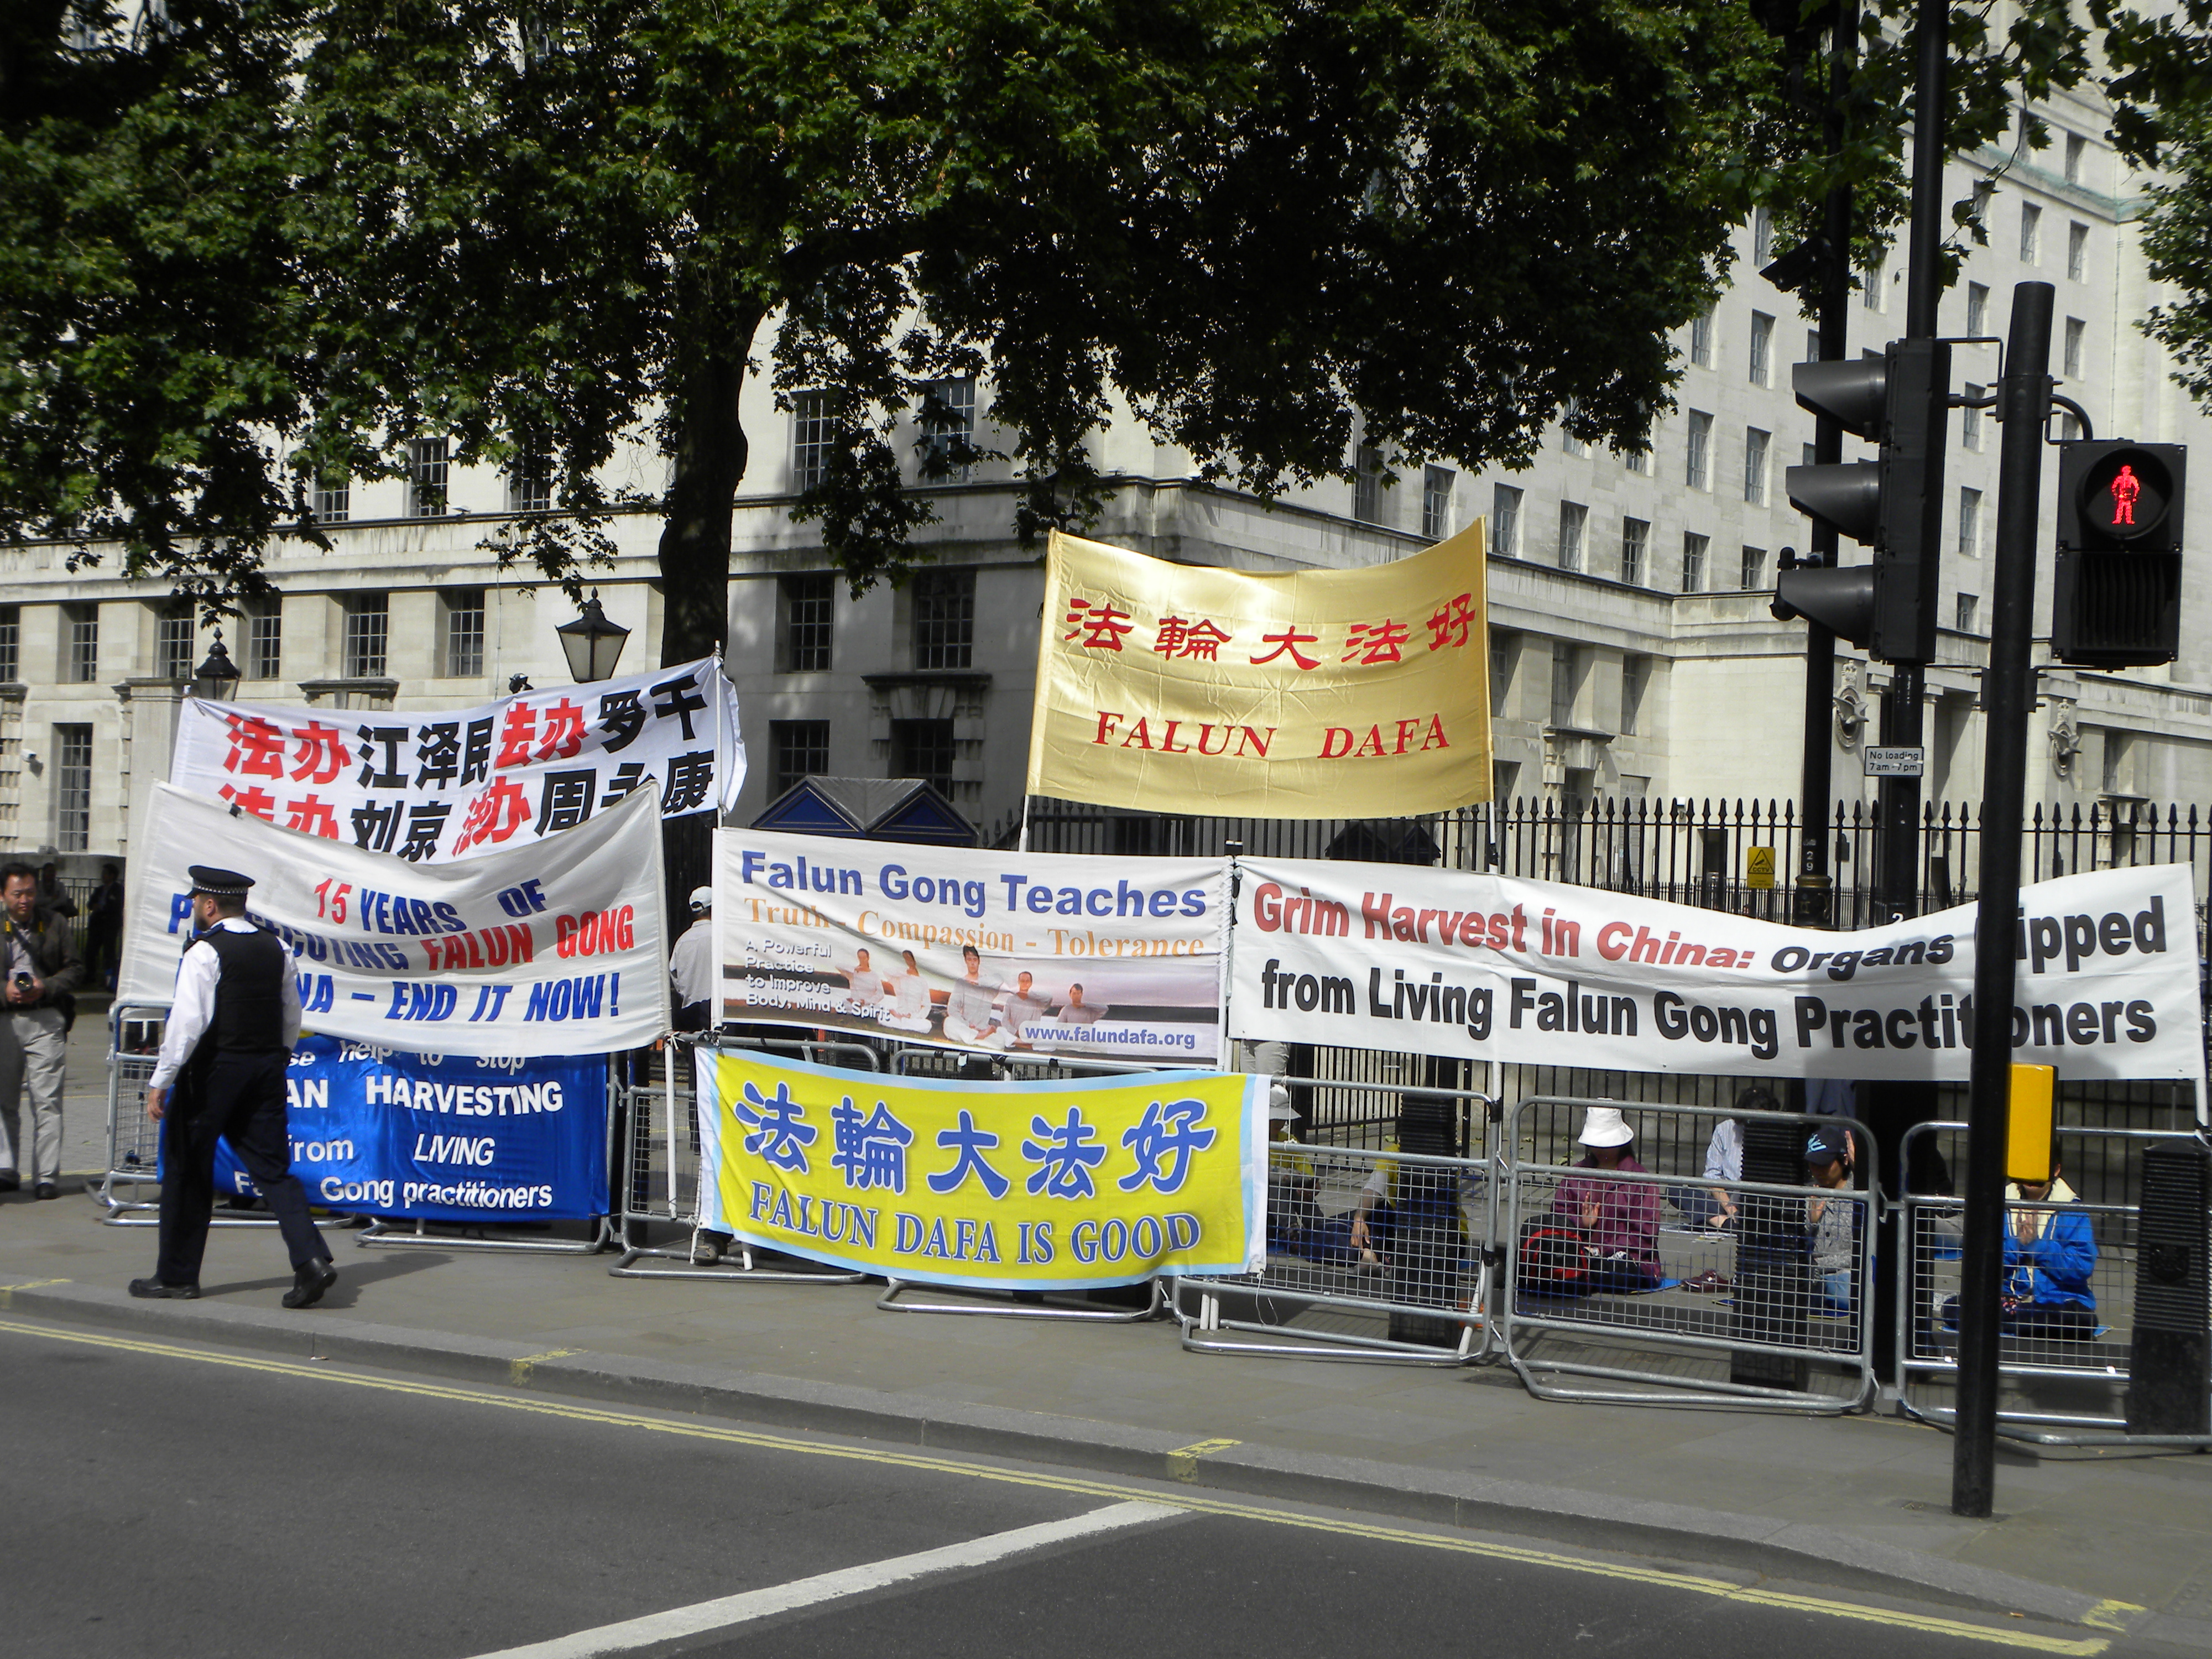 Un groupe similaire de militants ont organisé une manifestation près de Downing Street à Londres le 17 Juin 2014 pour condamner la persécution des militants de Falun Gong en Chine. Photo de Reporter#19616. Copyright Demotix